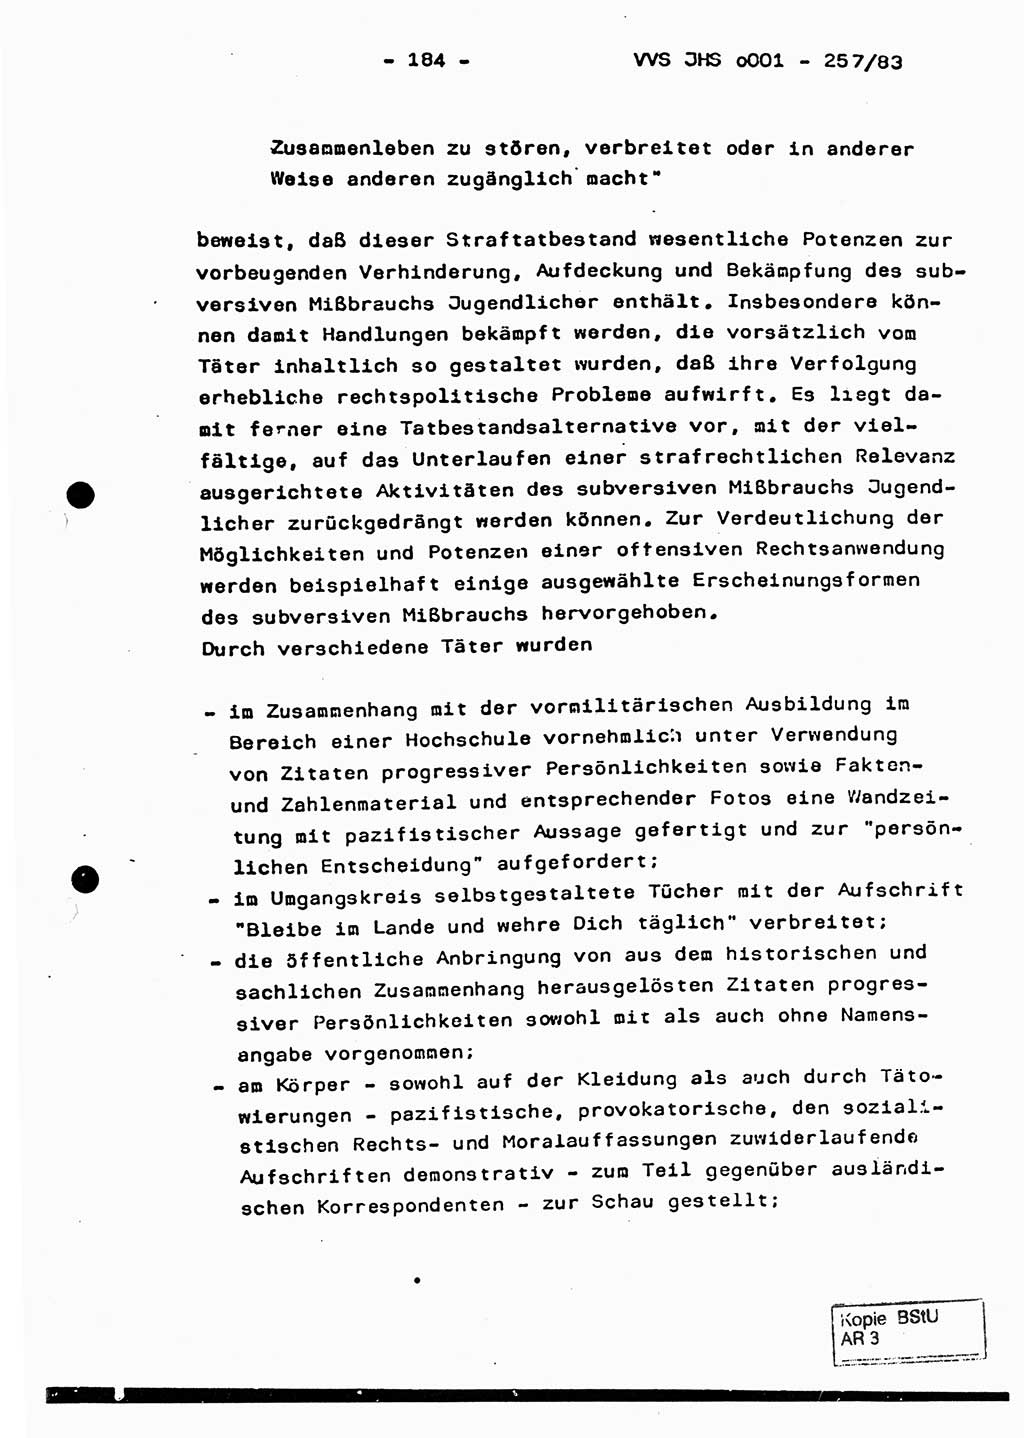 Dissertation, Oberst Helmut Lubas (BV Mdg.), Oberstleutnant Manfred Eschberger (HA IX), Oberleutnant Hans-Jürgen Ludwig (JHS), Ministerium für Staatssicherheit (MfS) [Deutsche Demokratische Republik (DDR)], Juristische Hochschule (JHS), Vertrauliche Verschlußsache (VVS) o001-257/83, Potsdam 1983, Seite 184 (Diss. MfS DDR JHS VVS o001-257/83 1983, S. 184)